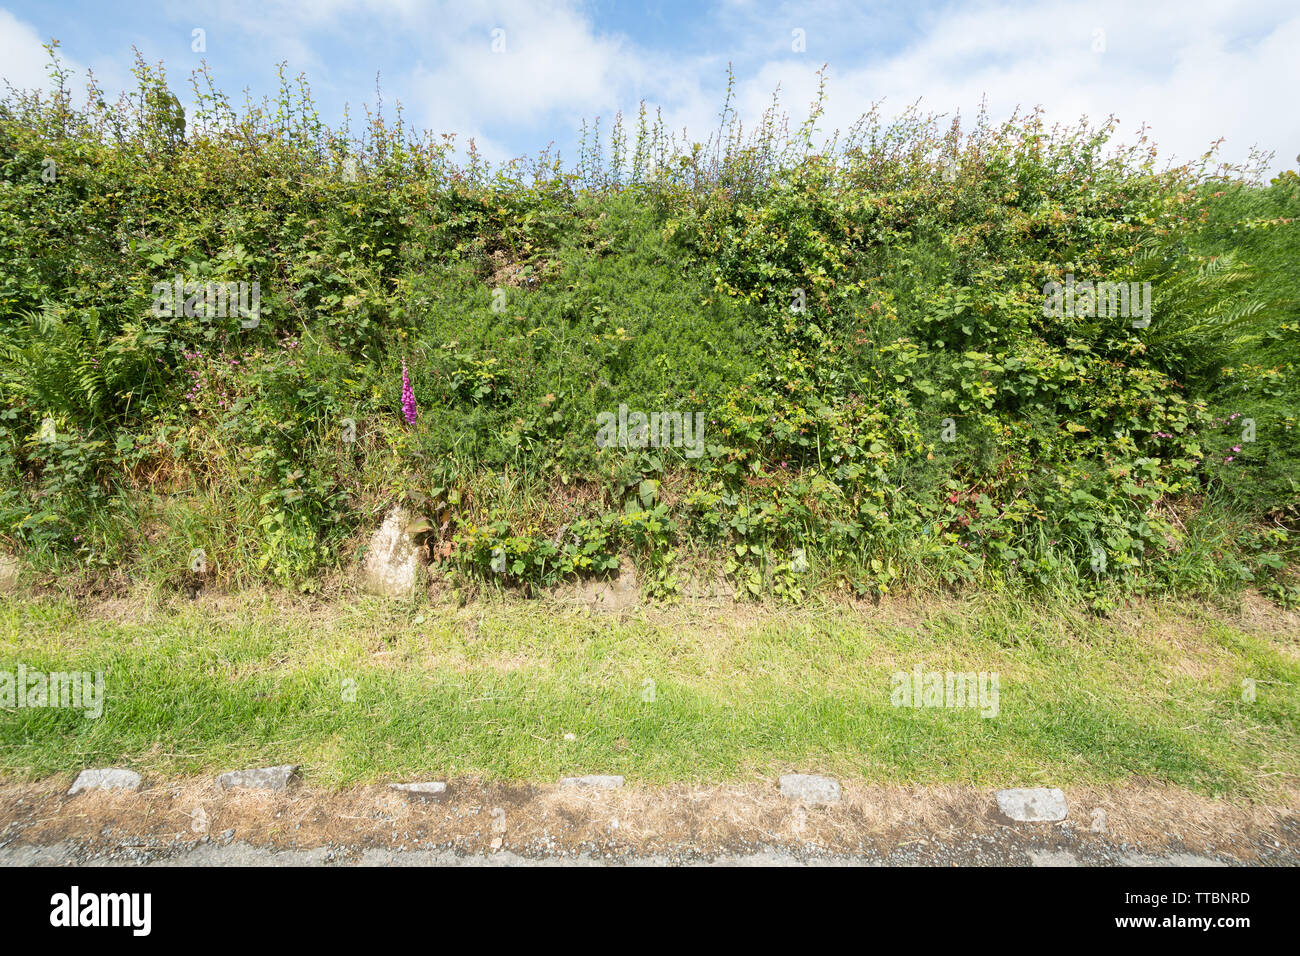 Pembrokeshire hedge siepe hedgebank (hedge banca), un tradizionale confine campo in Galles, UK, con fiori selvaggi nel corso del mese di giugno o inizio di estate Foto Stock